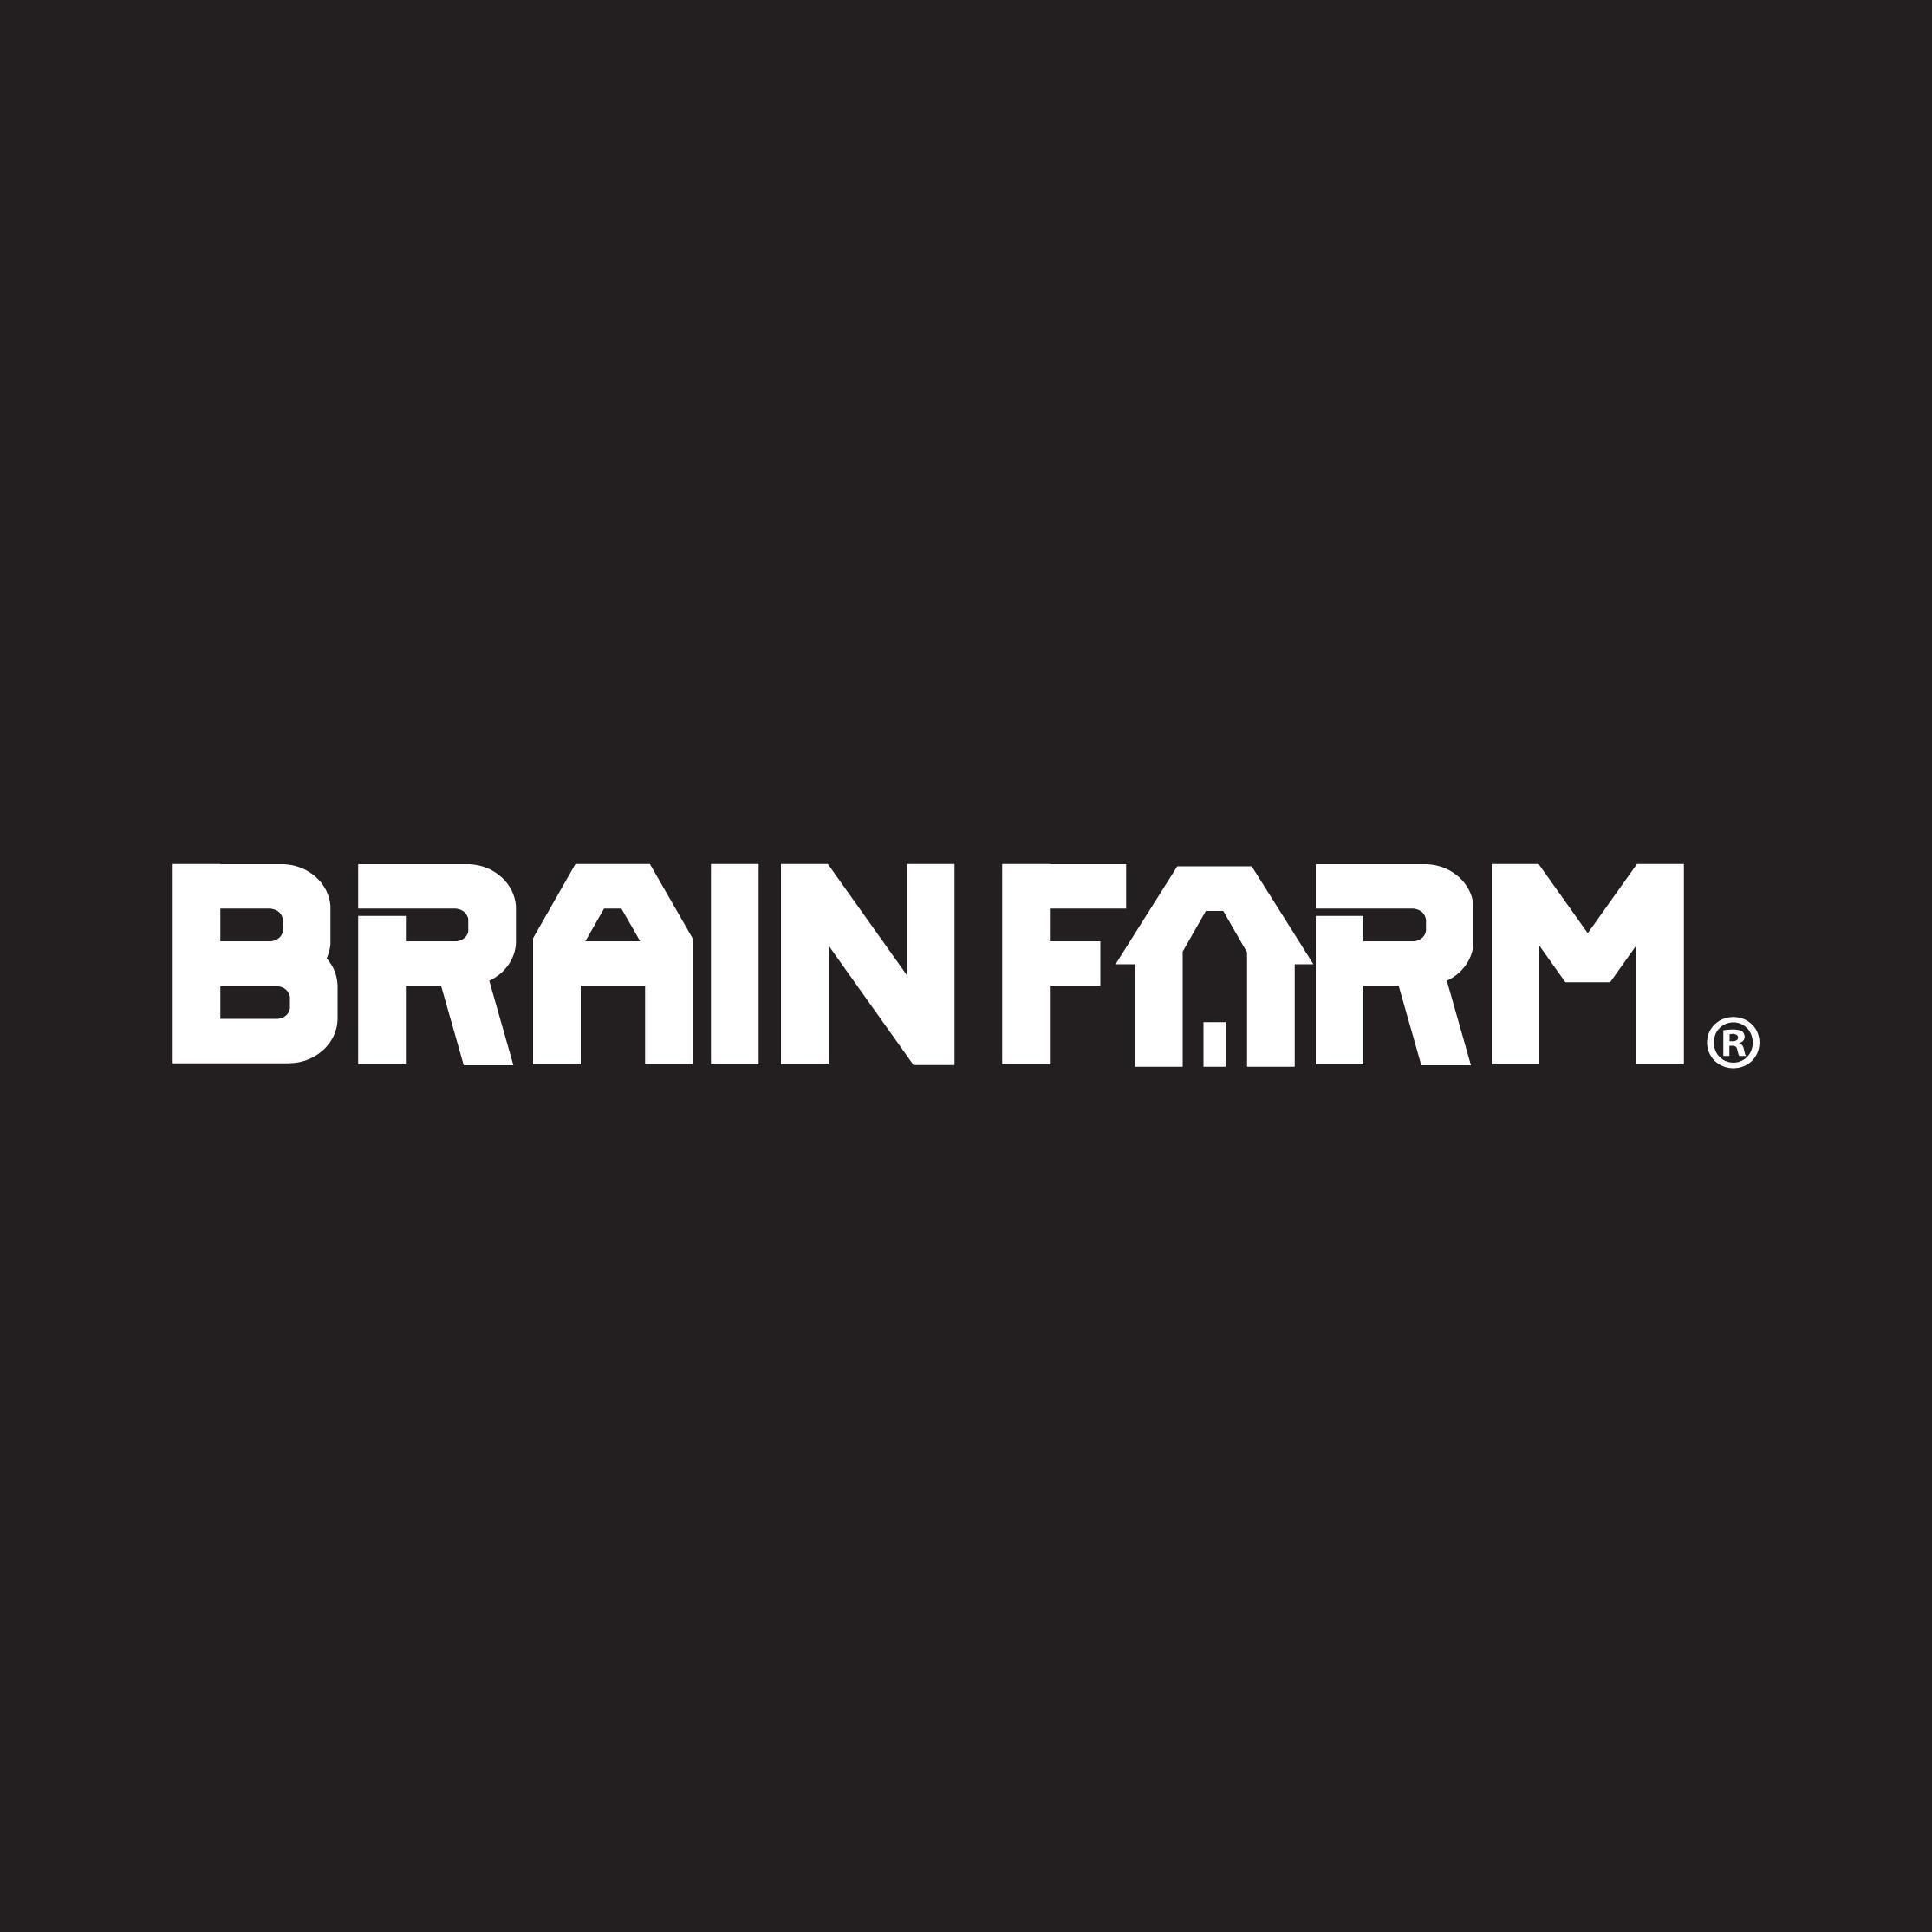 brainfarm logo